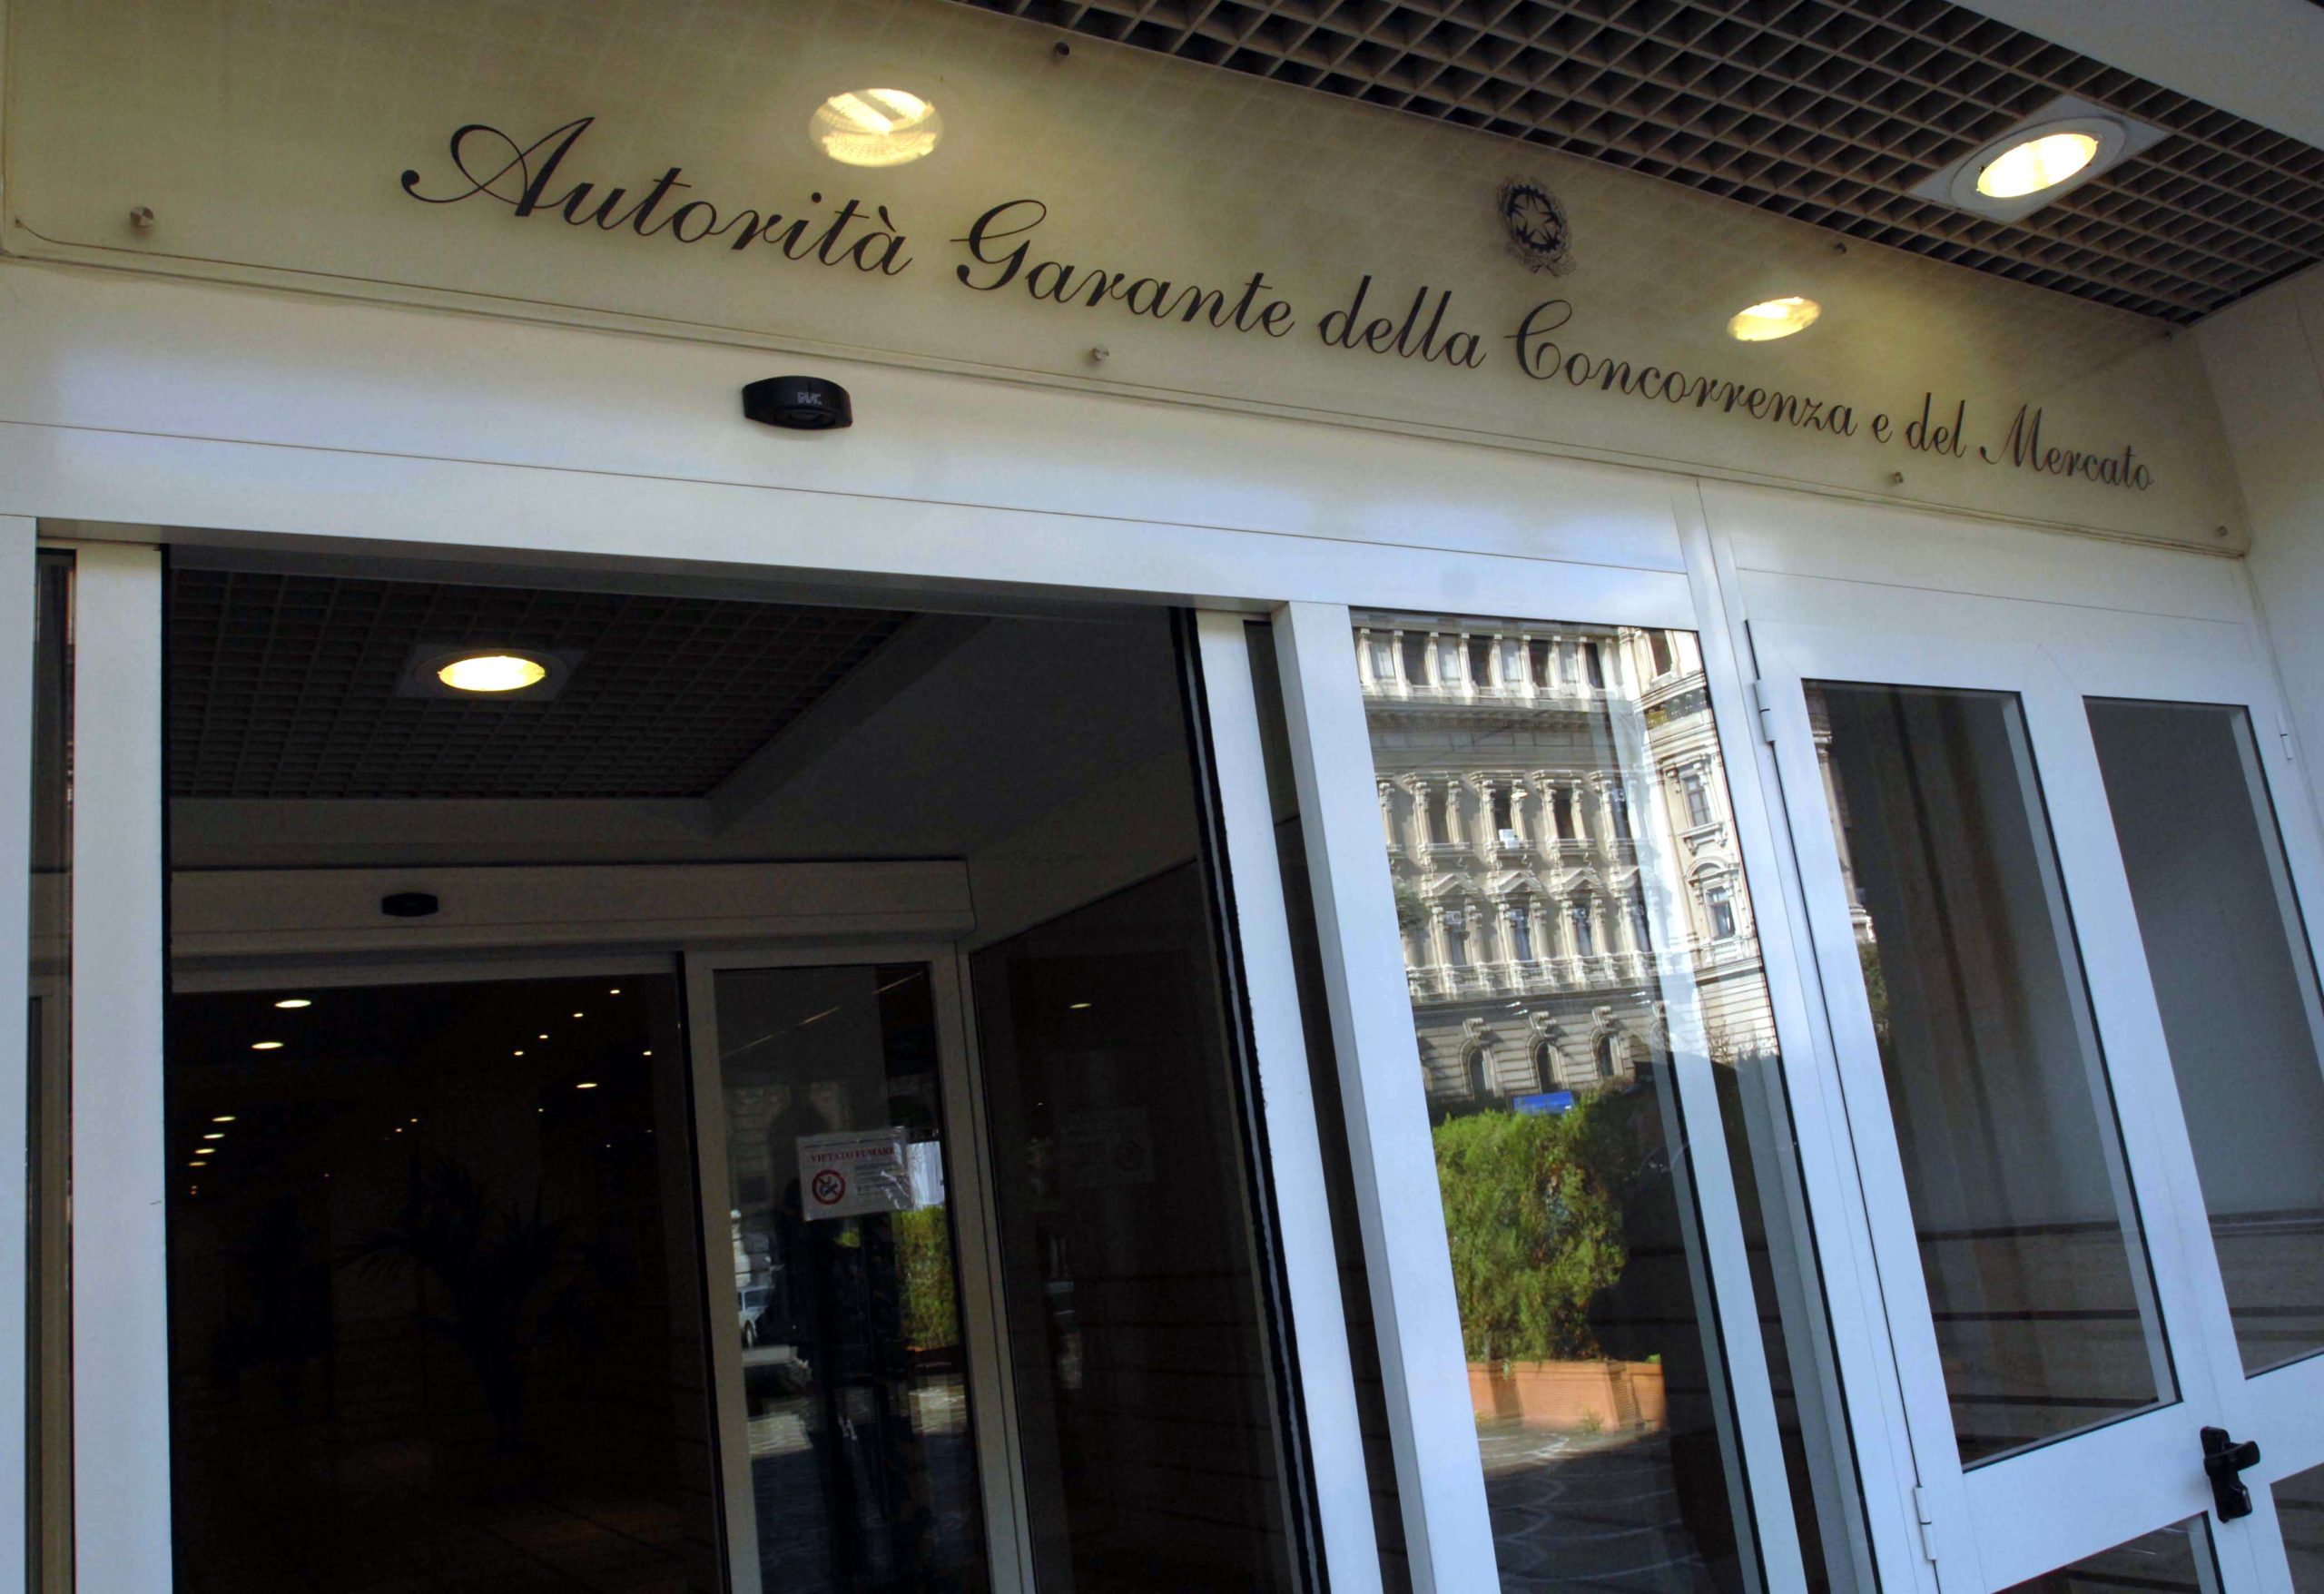 Attivazioni di contratto non richieste: multato il Servizio Energetico Italiano